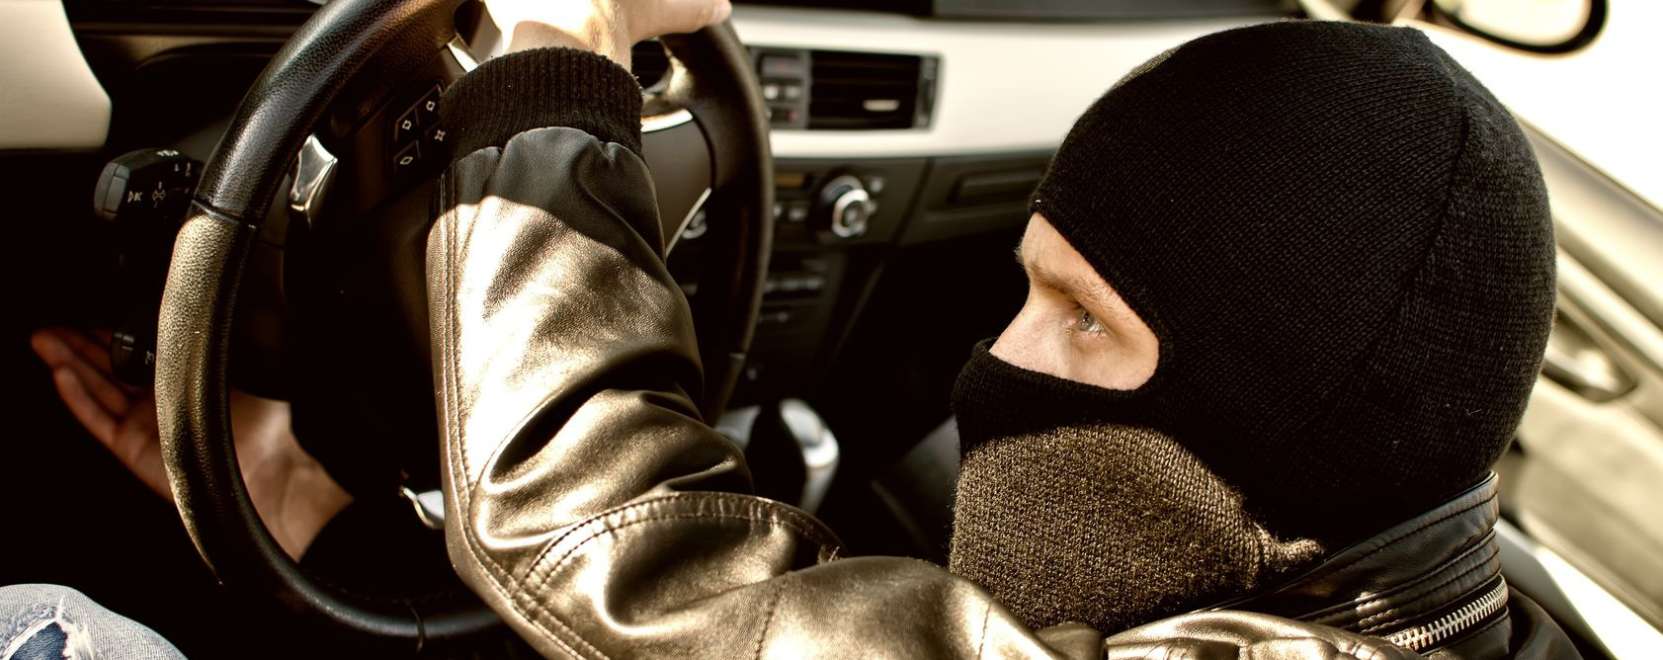 Az önjáró autó lehet a bűnözés újabb terepe?